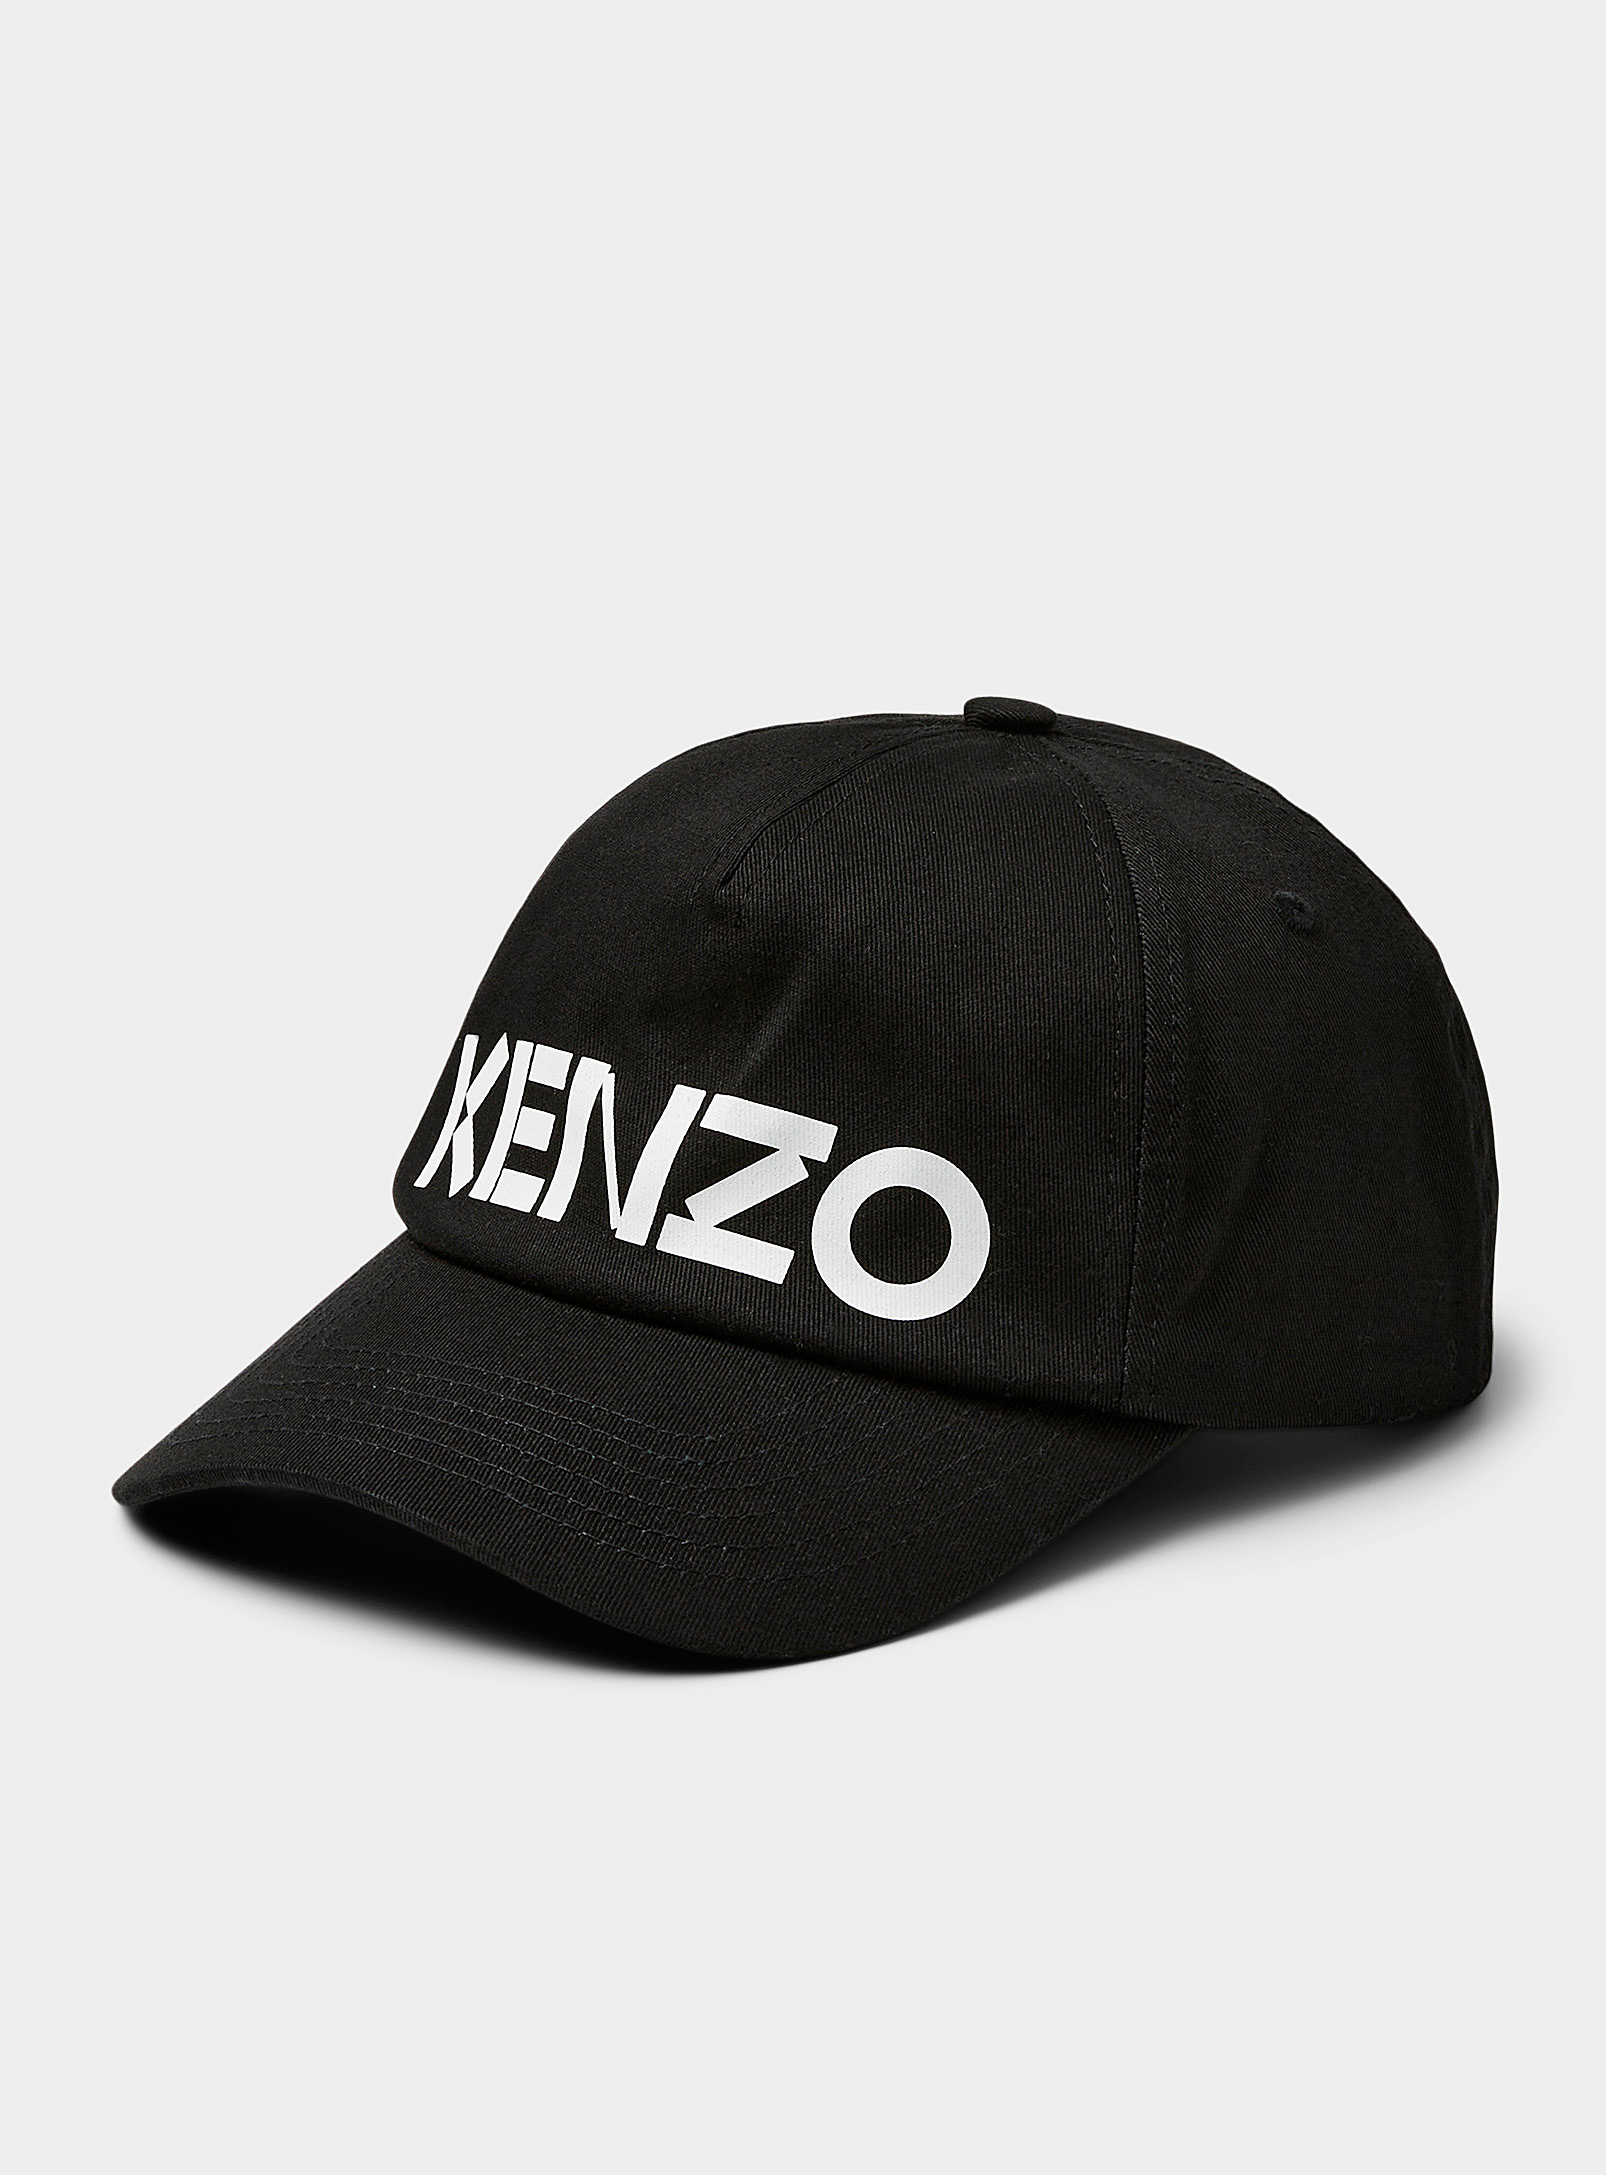 Kenzo - Accent signature cap